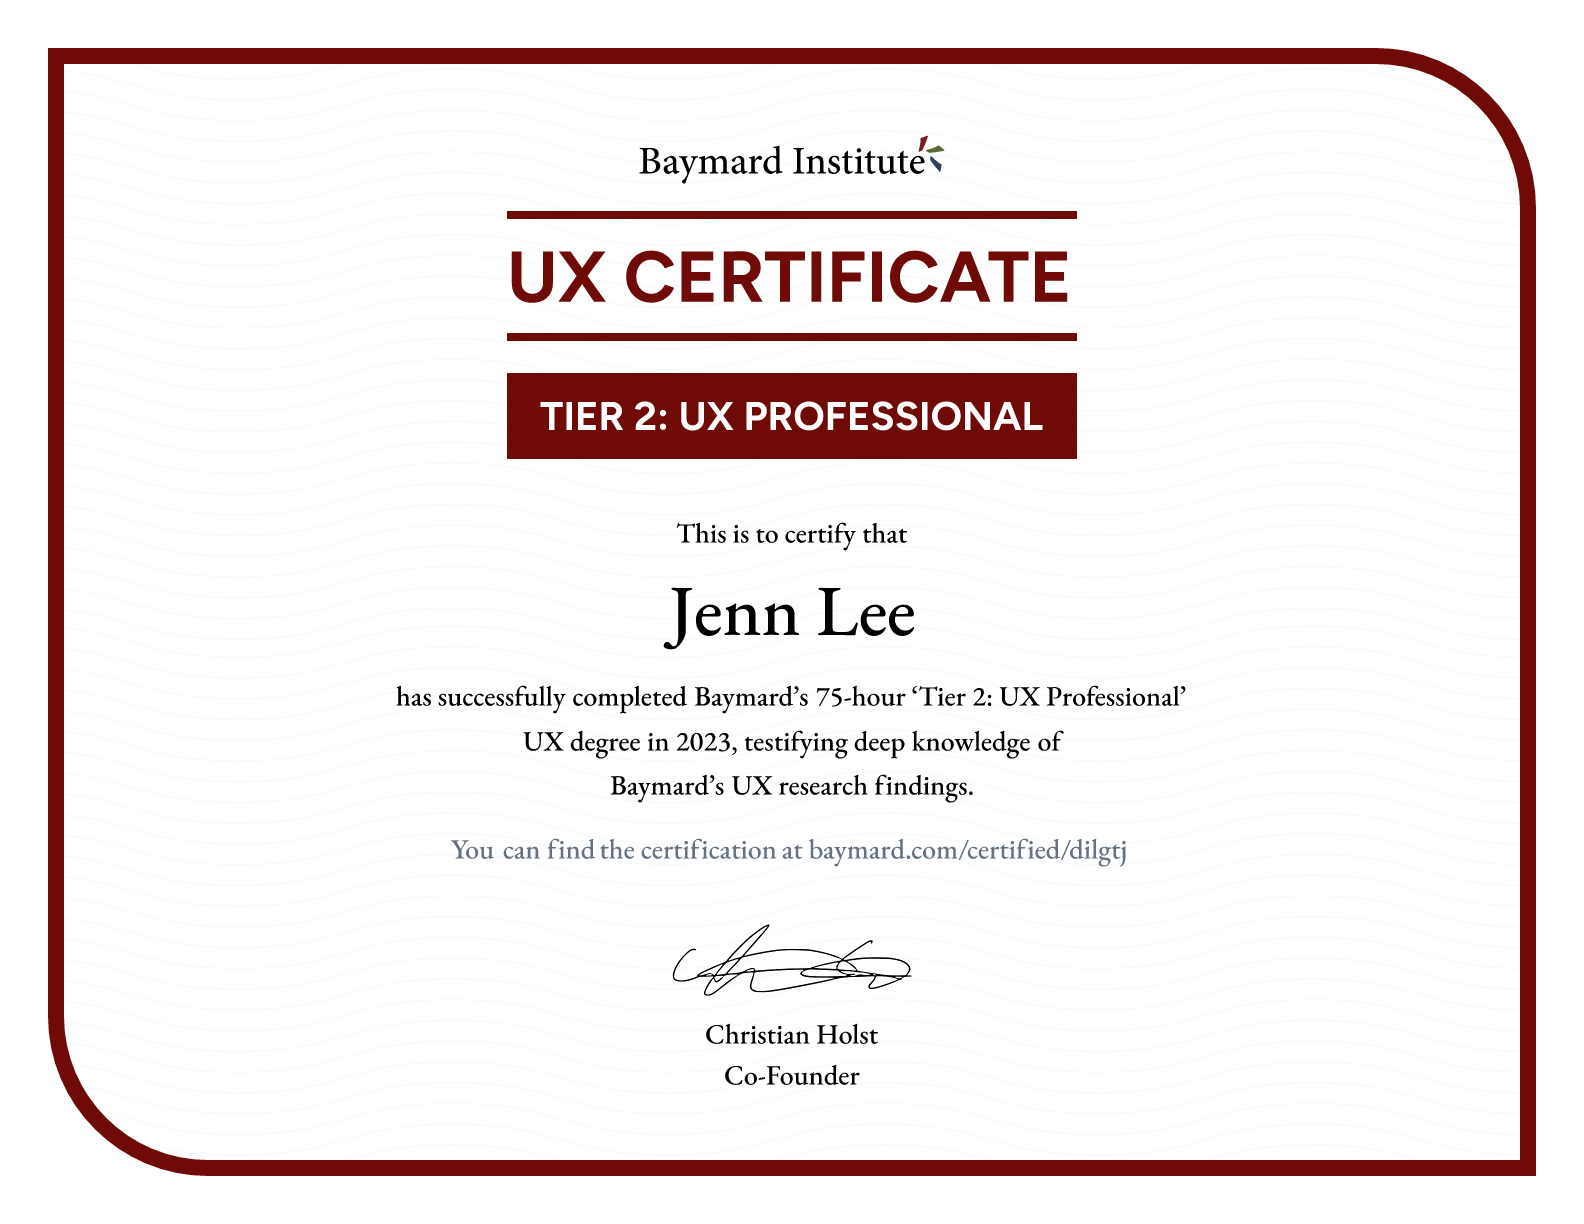 Jenn Lee’s certificate